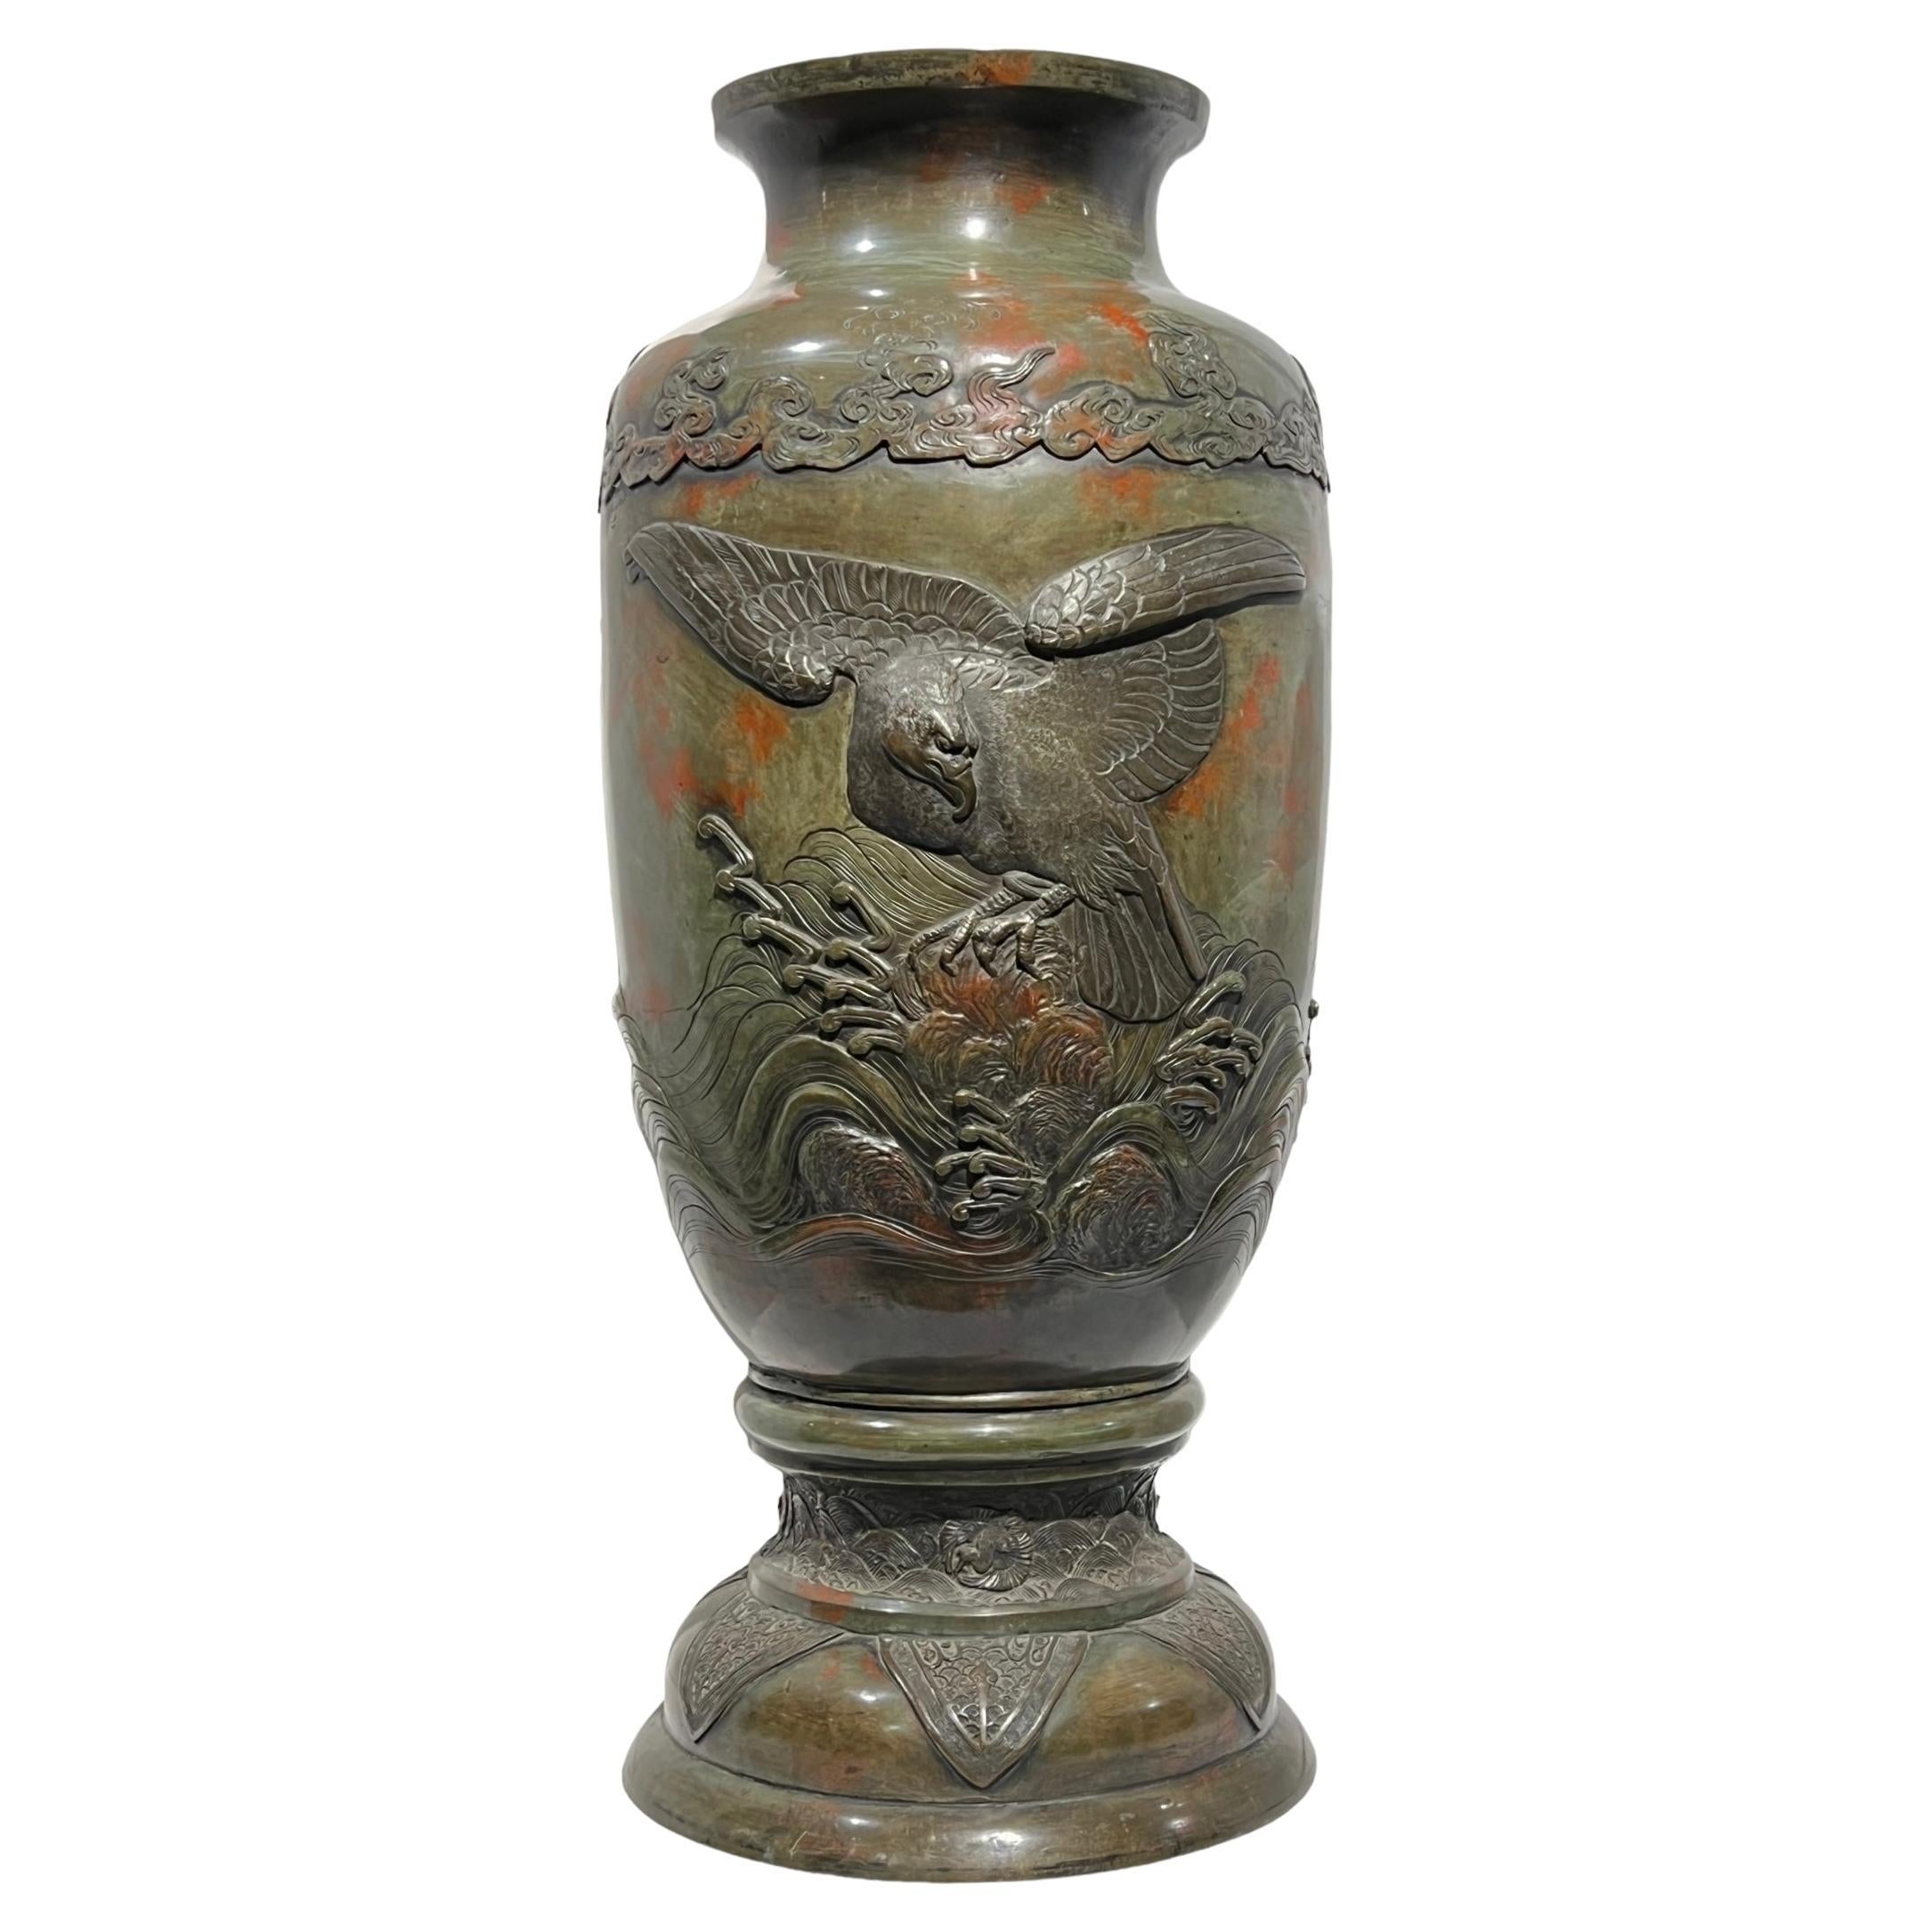 Large 19th Century Meiji Japanese Patinated Bronze Vase